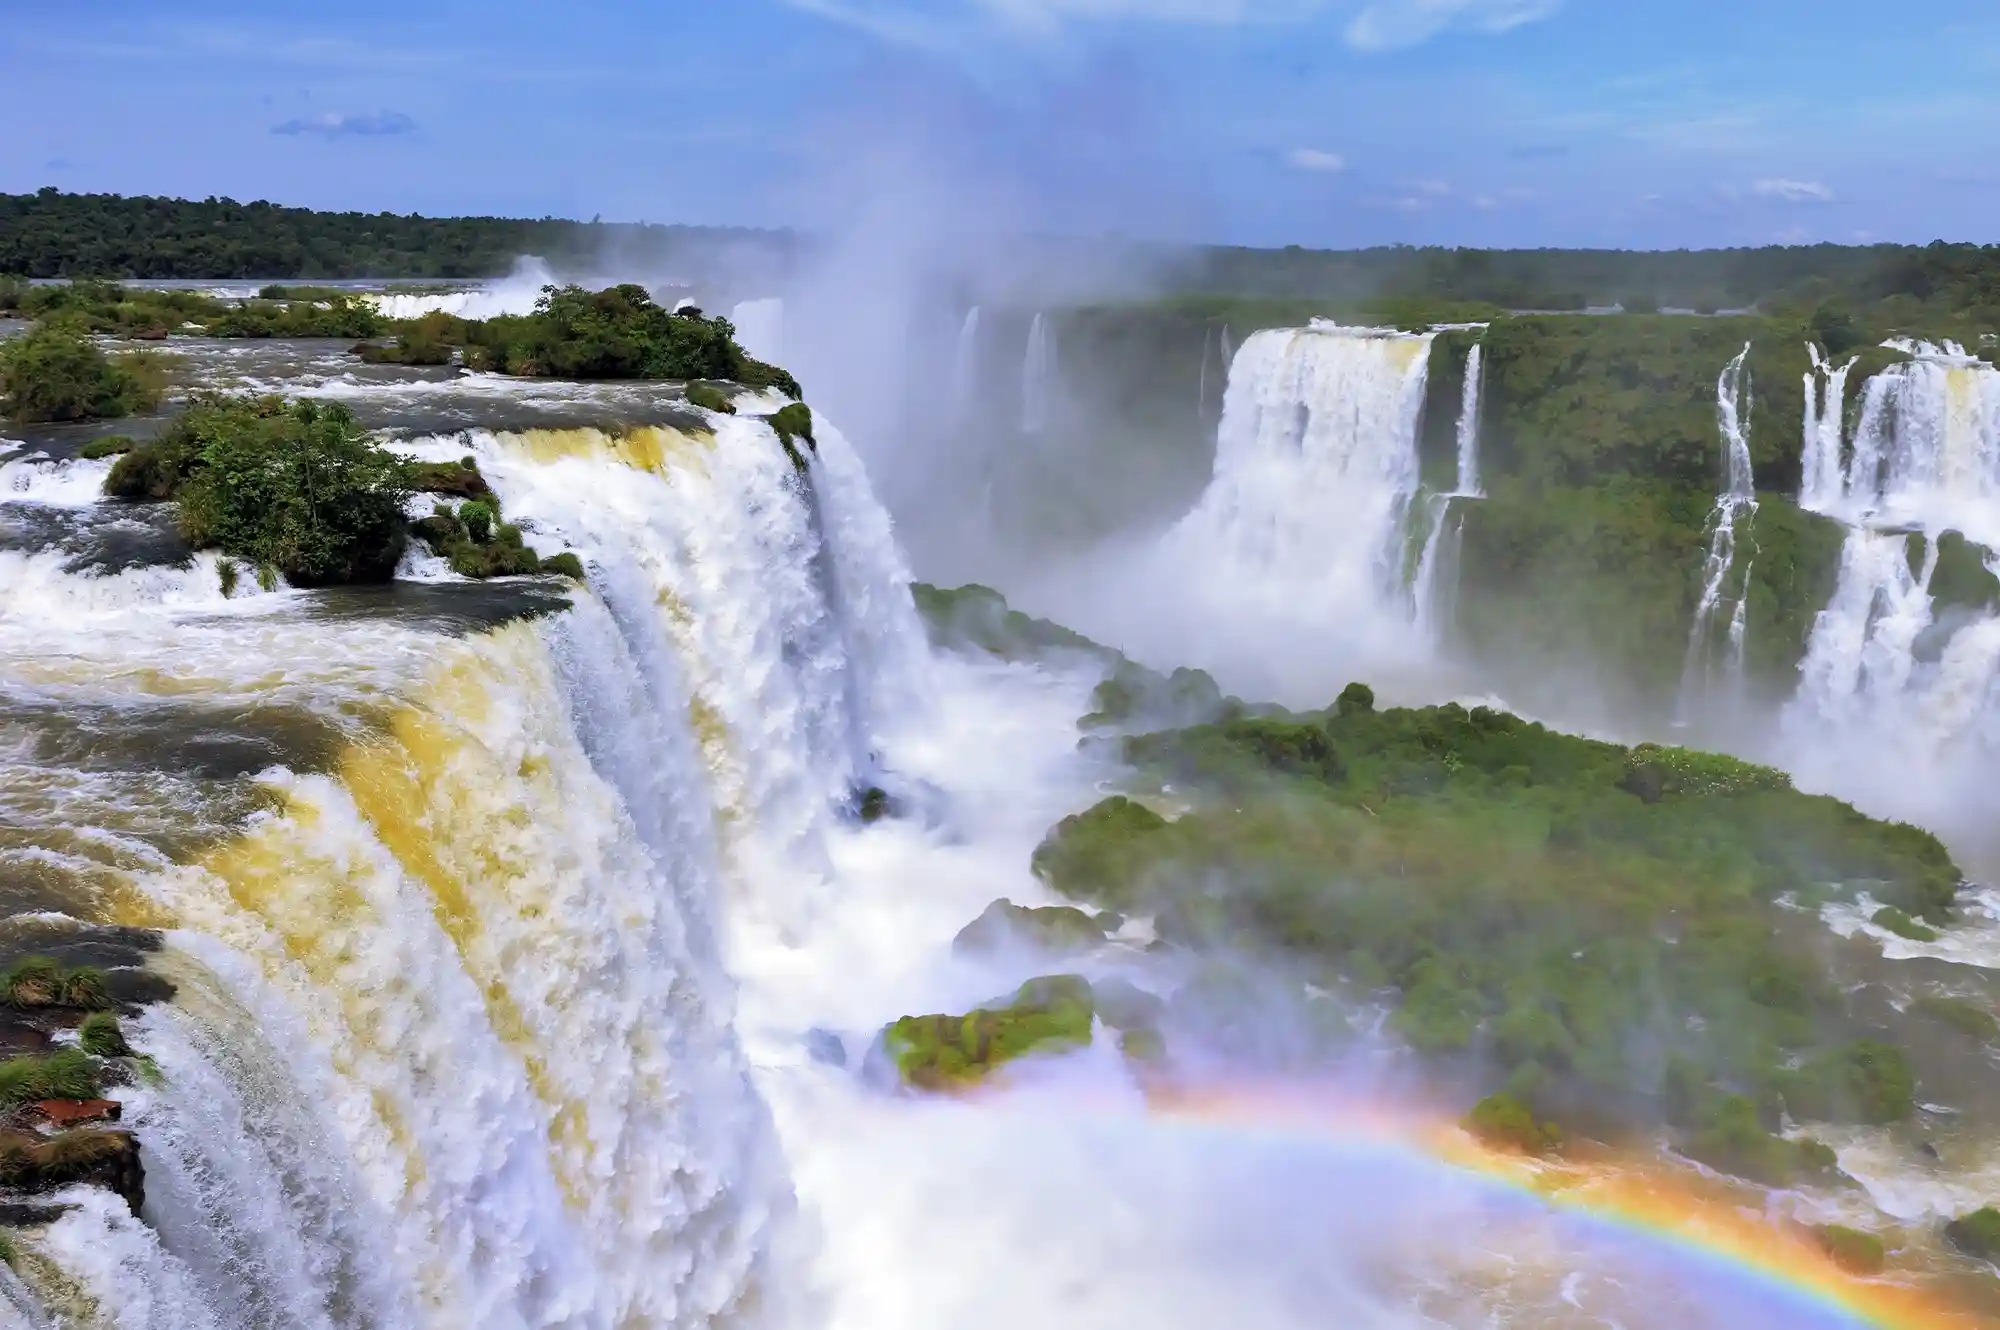 Iguaçu Falls, located in the city of Foz do Iguaçu.